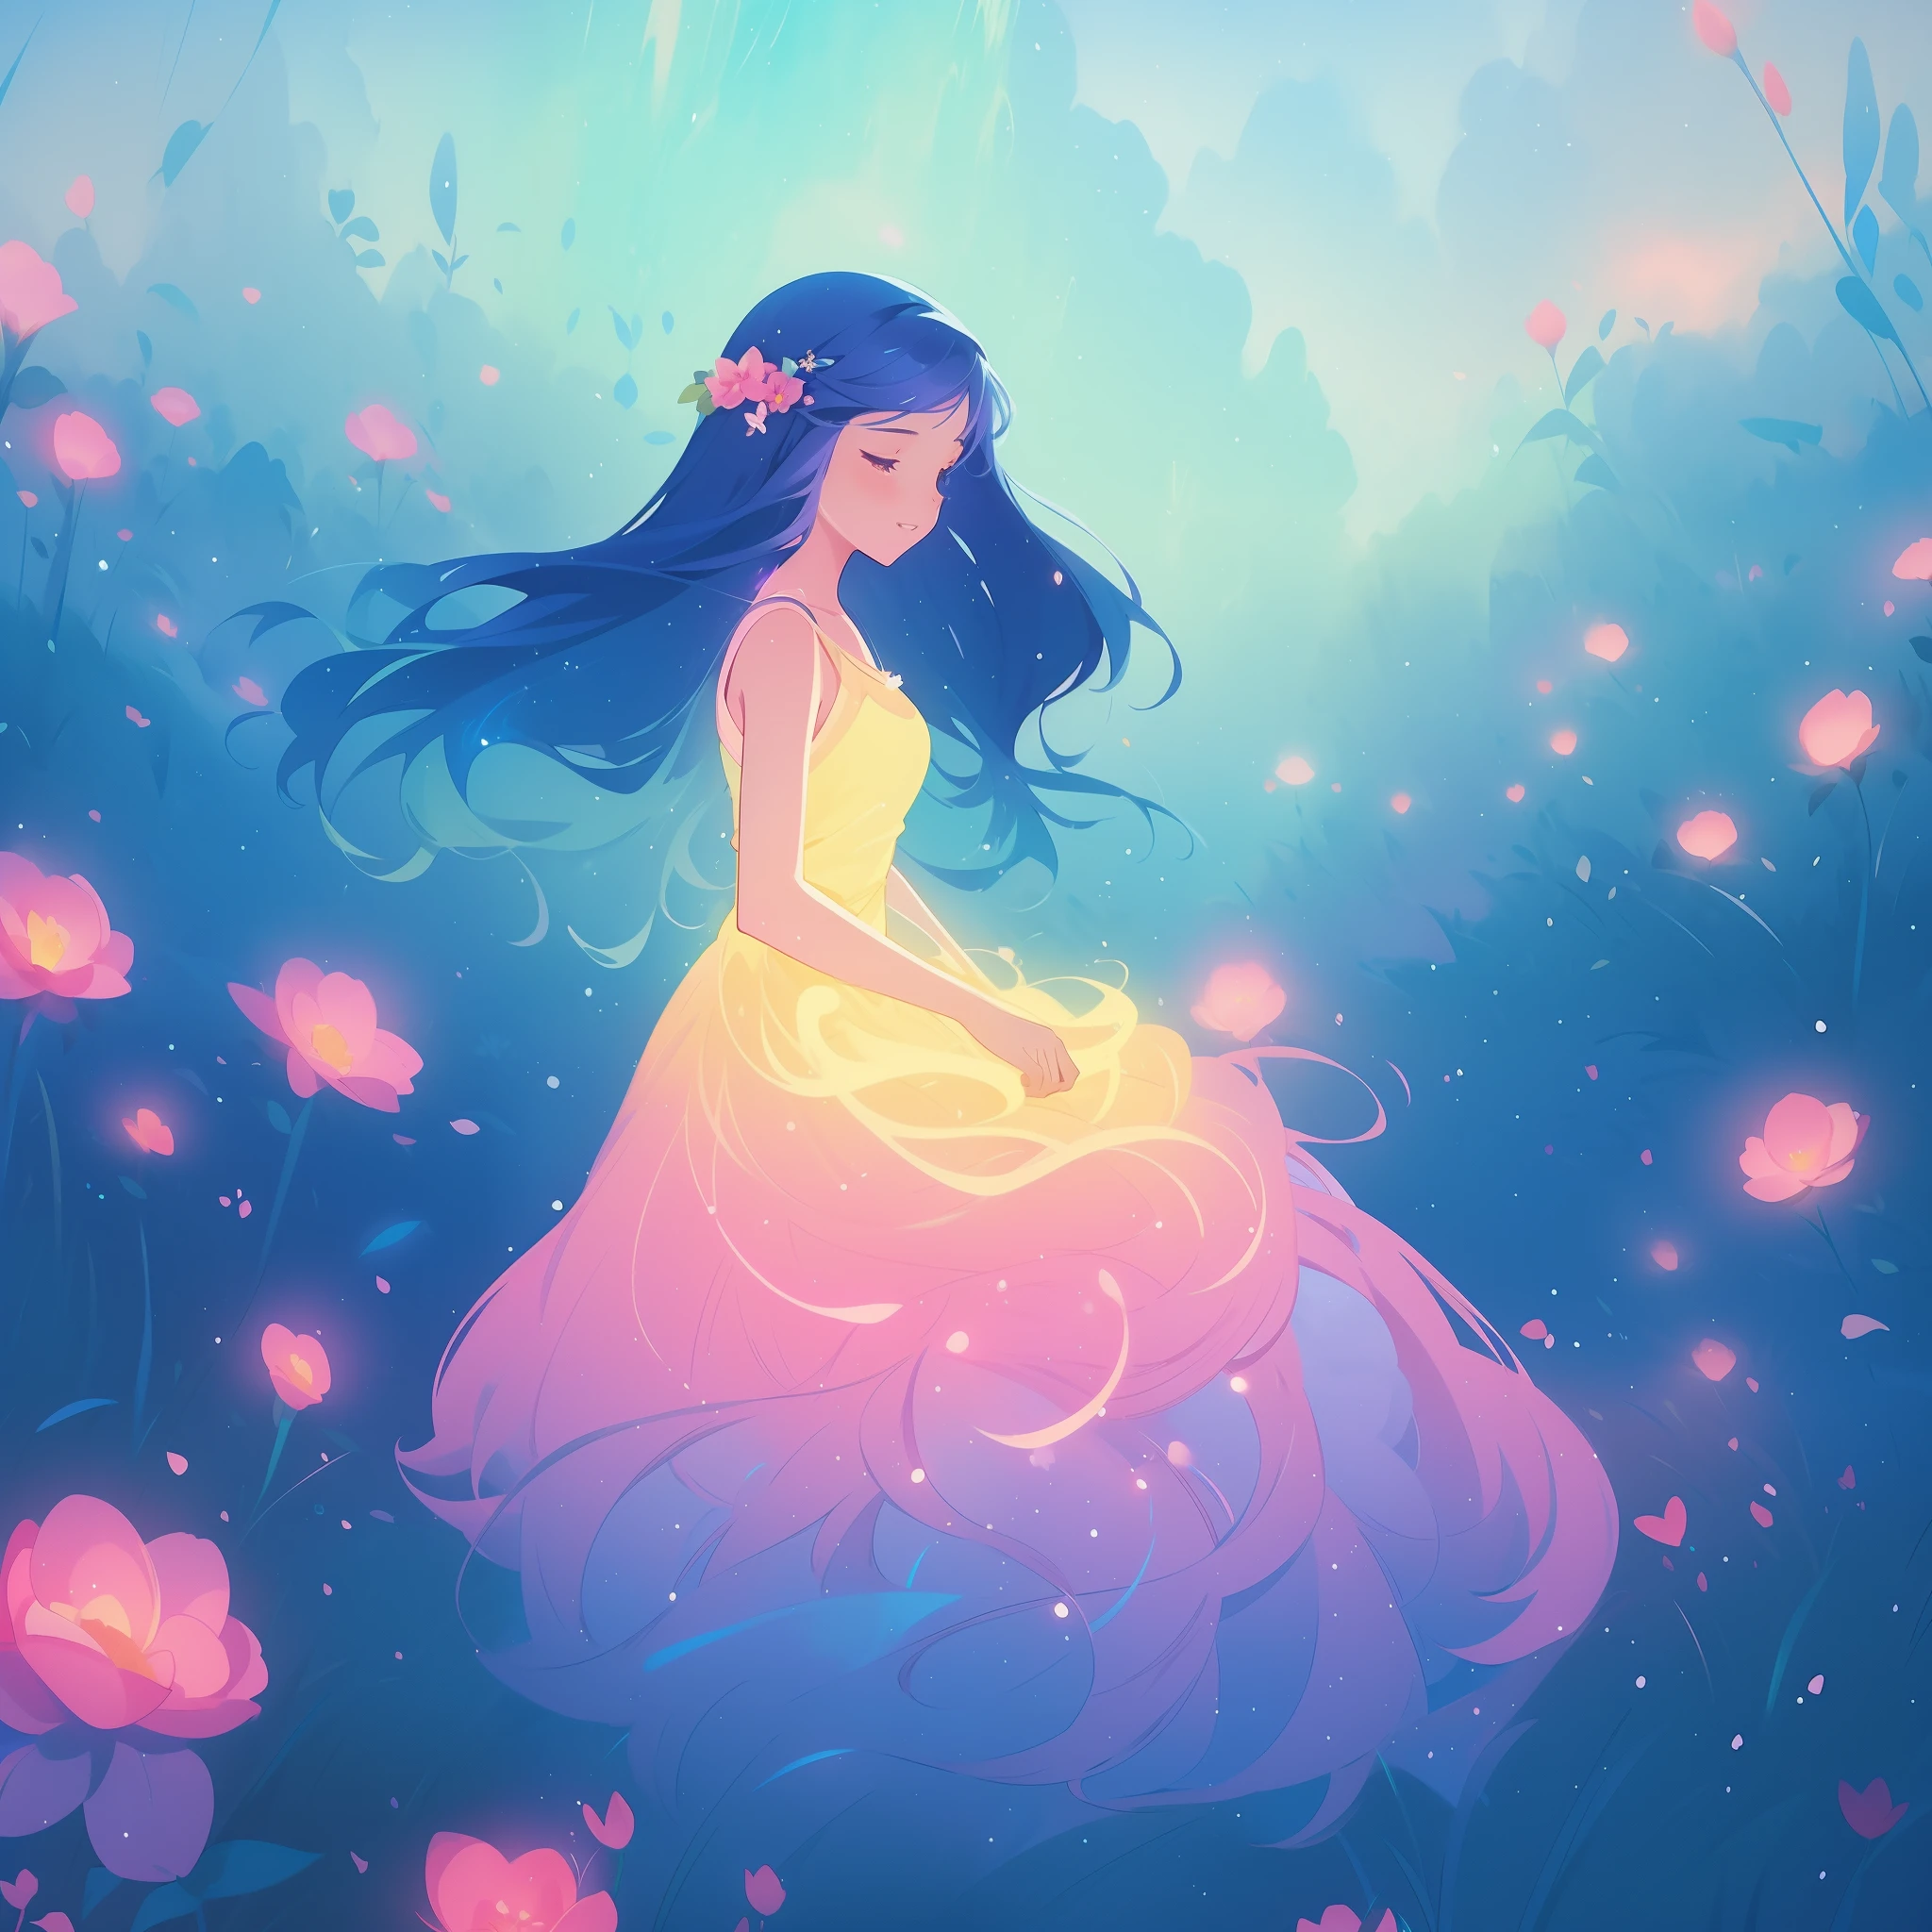 สวย girl in gradient colorful dress, ชุดนางฟ้าสีม่วงเหลืองชมพู, สวย girl sitting in a field with pink red flowers, ดอกไม้สีชมพูอ้วน, ไฟเรืองแสง, ภูมิทัศน์ที่แปลกประหลาด, ผมยาวสลวยสีน้ำเงินเข้ม, ภาพประกอบสีน้ำ, inspired โดยเกลน คีน, inspired โดย โลอิส ฟาน บาร์เล, สไตล์ศิลปะดิสนีย์, โดย โลอิส ฟาน บาร์เล, มีออร่าเปล่งประกายรอบตัวเธอ, โดยเกลน คีน, แค่ล้อเล่น, ไฟเรืองแสง! การวาดภาพดิจิตอล, ผมเรืองแสงไหลลื่น, ผมเปล่งประกาย, สวย digital illustration, แฟนตาซี ภูมิทัศน์ ต้นไม้ ดอกไม้ ในอีกโลกหนึ่ง, สวย, ผลงานชิ้นเอก, คุณภาพดีที่สุด, อะนิเมะสไตล์ดิสนีย์